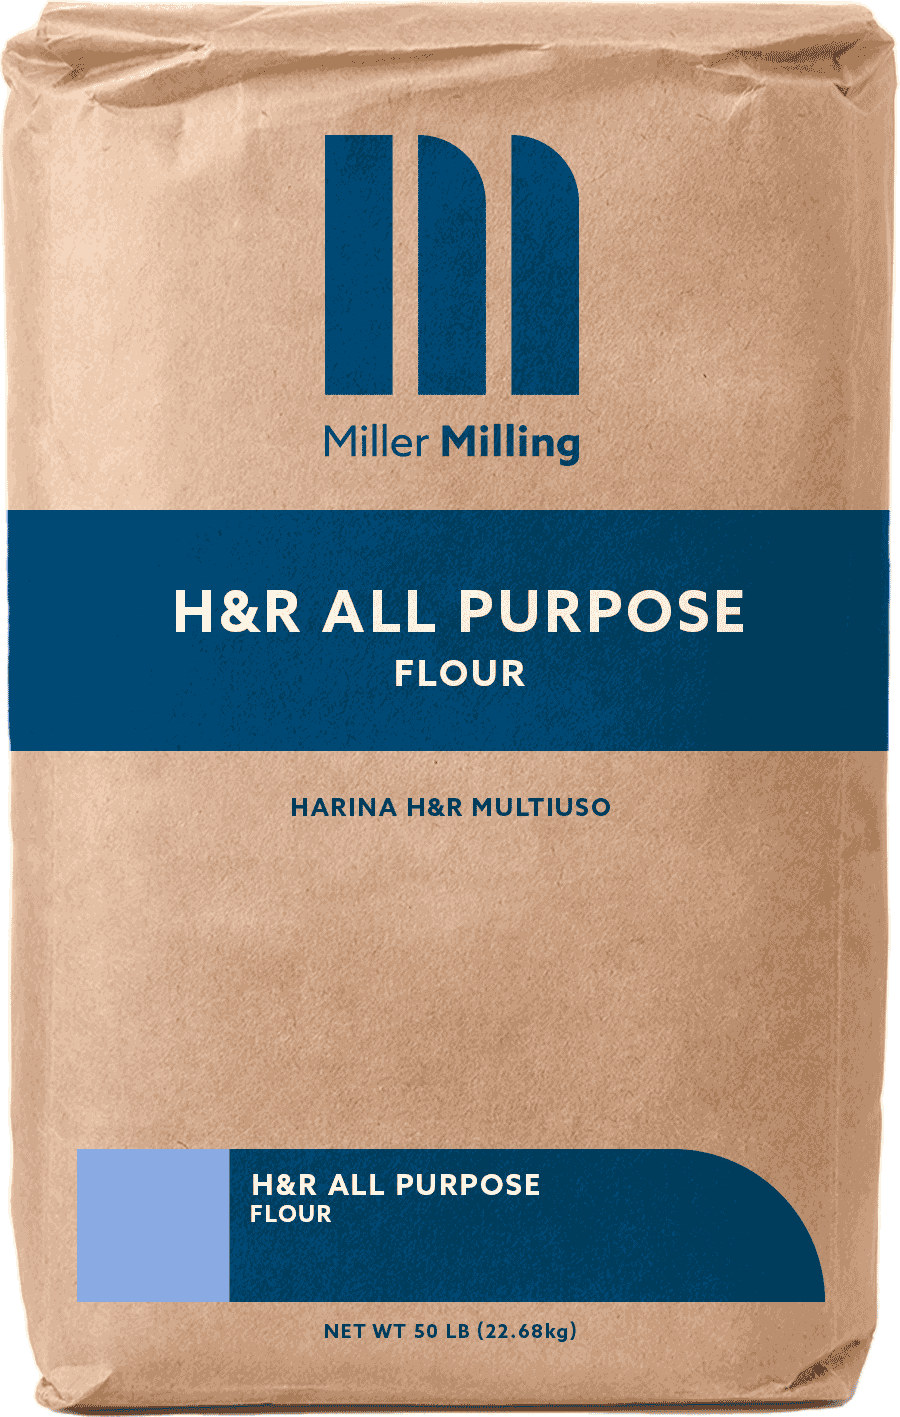 H&R All Purpose